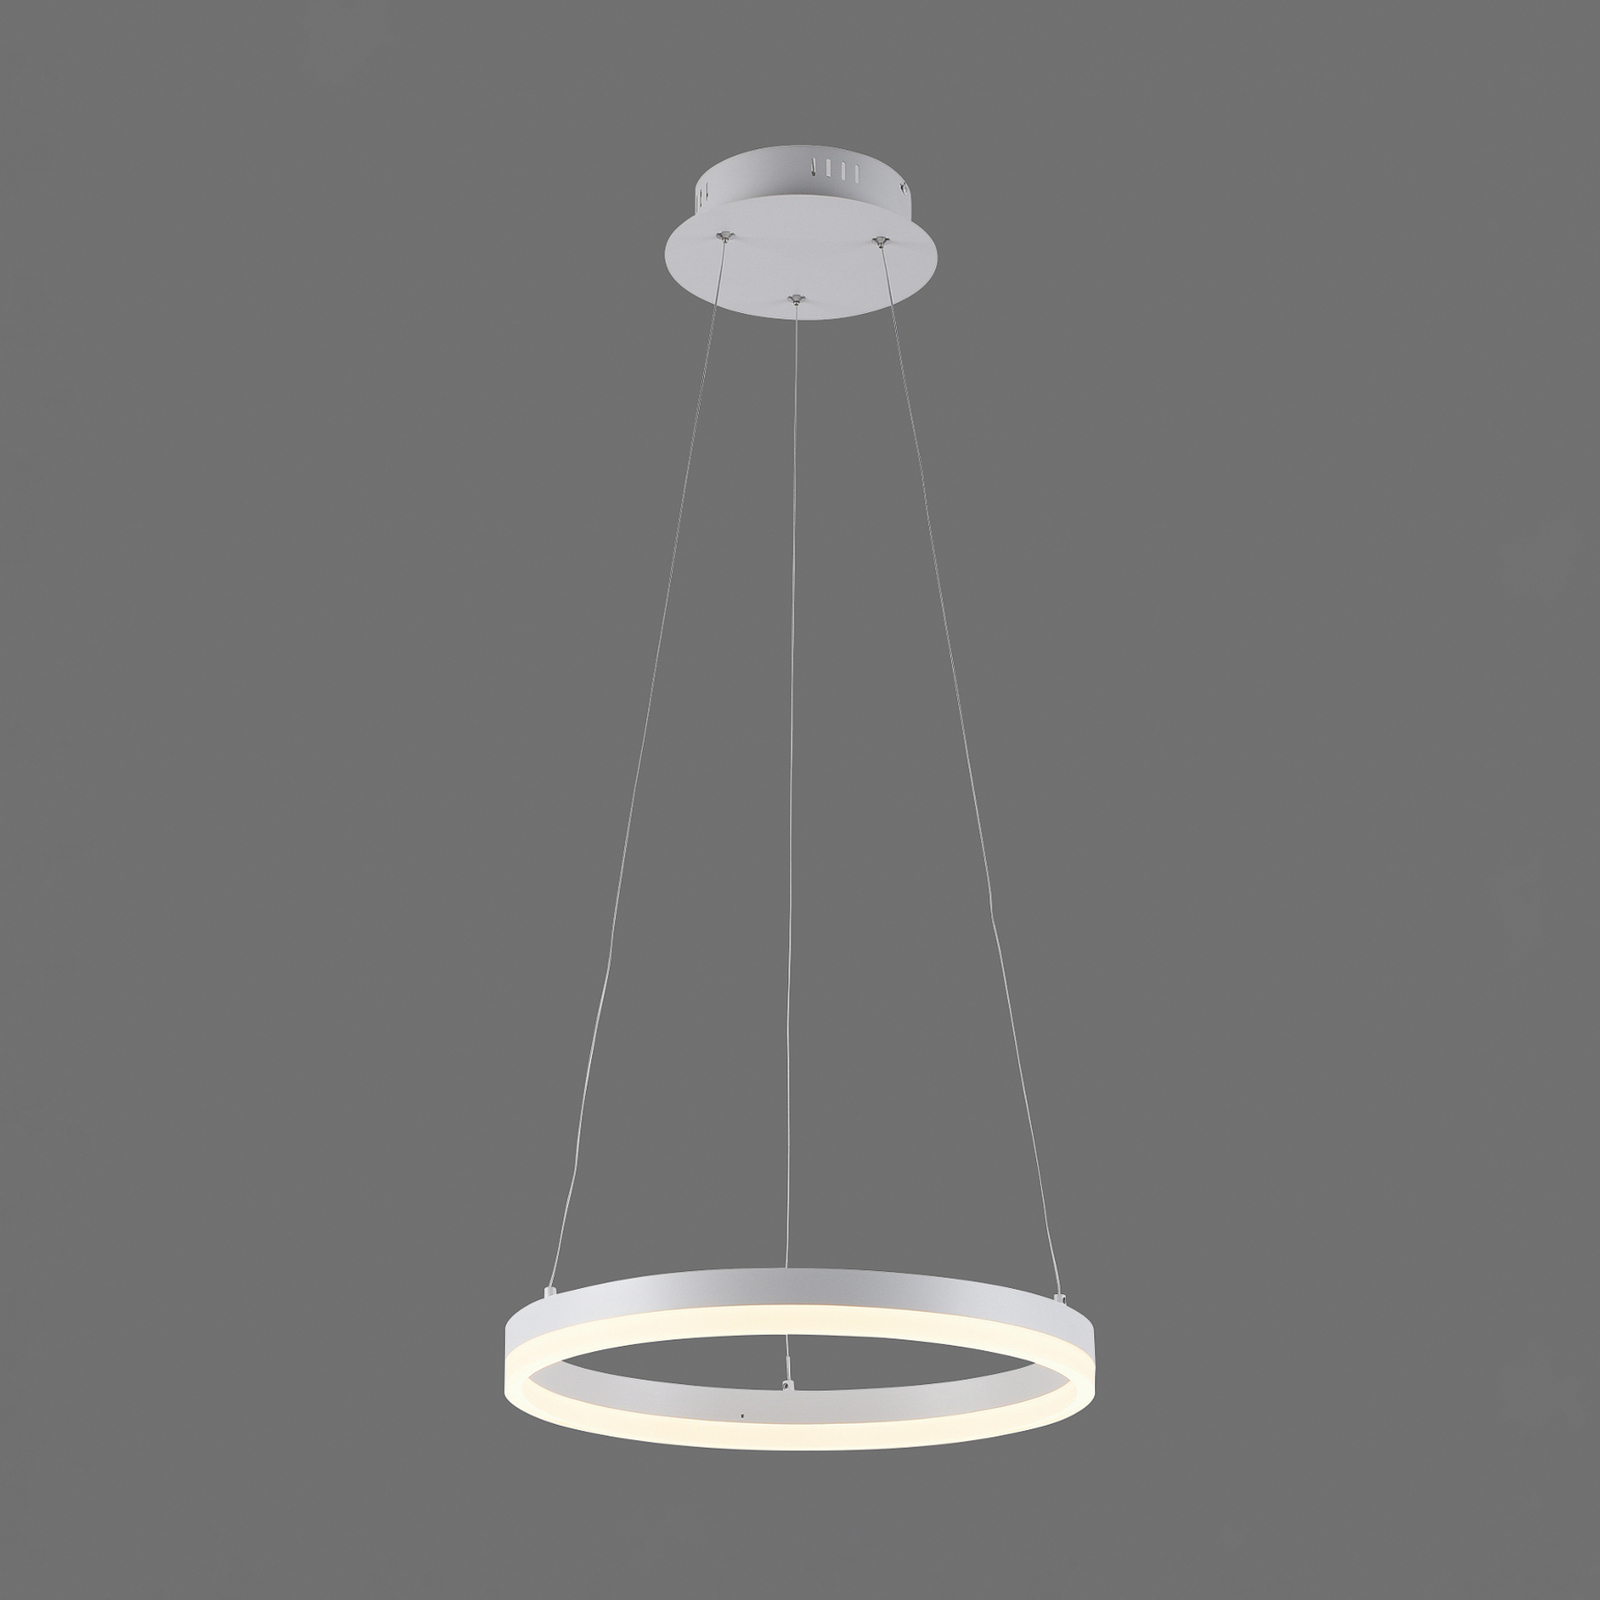 Titus lampă suspendată LED, rotundă, Ø 40 cm, alb